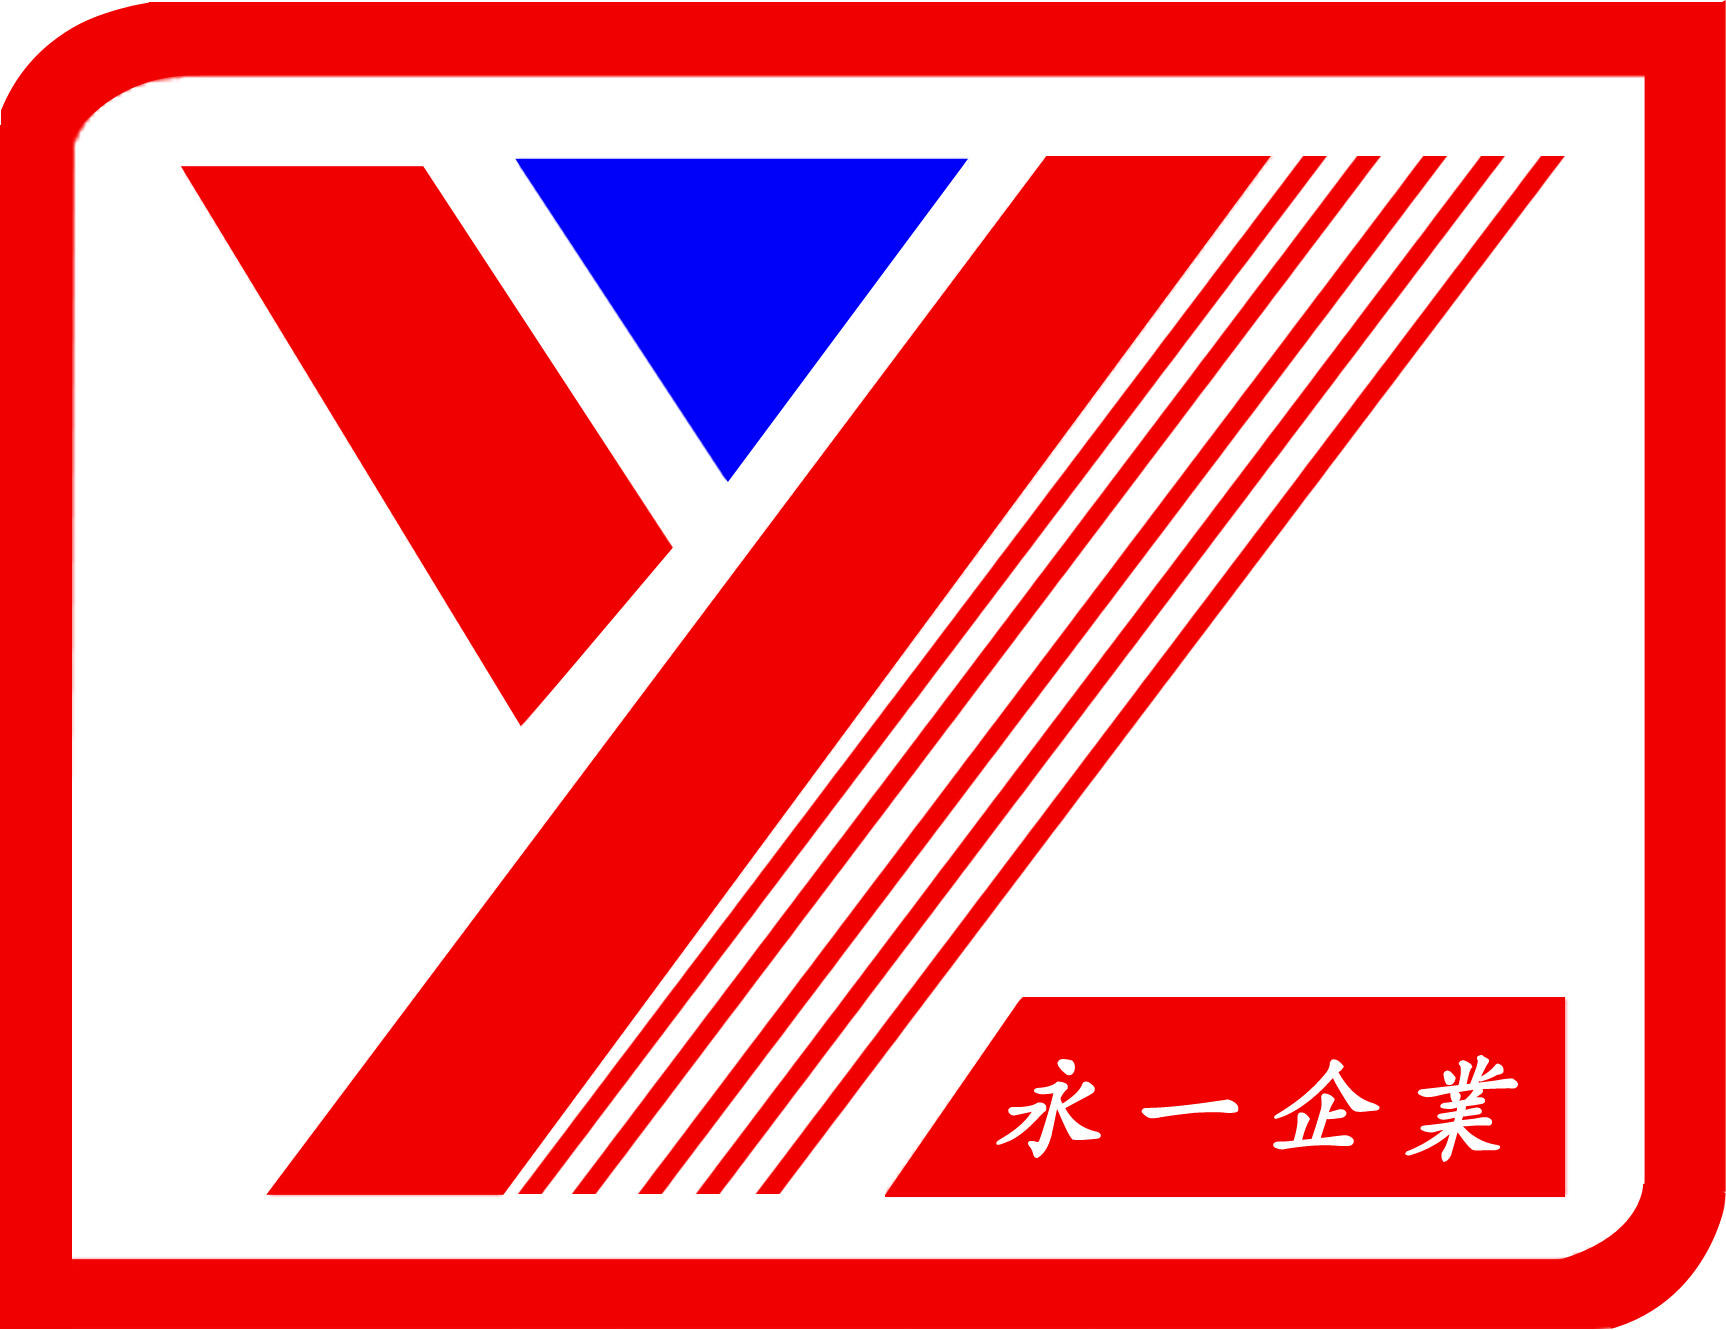 YONGYI RUBBER Co., Ltd